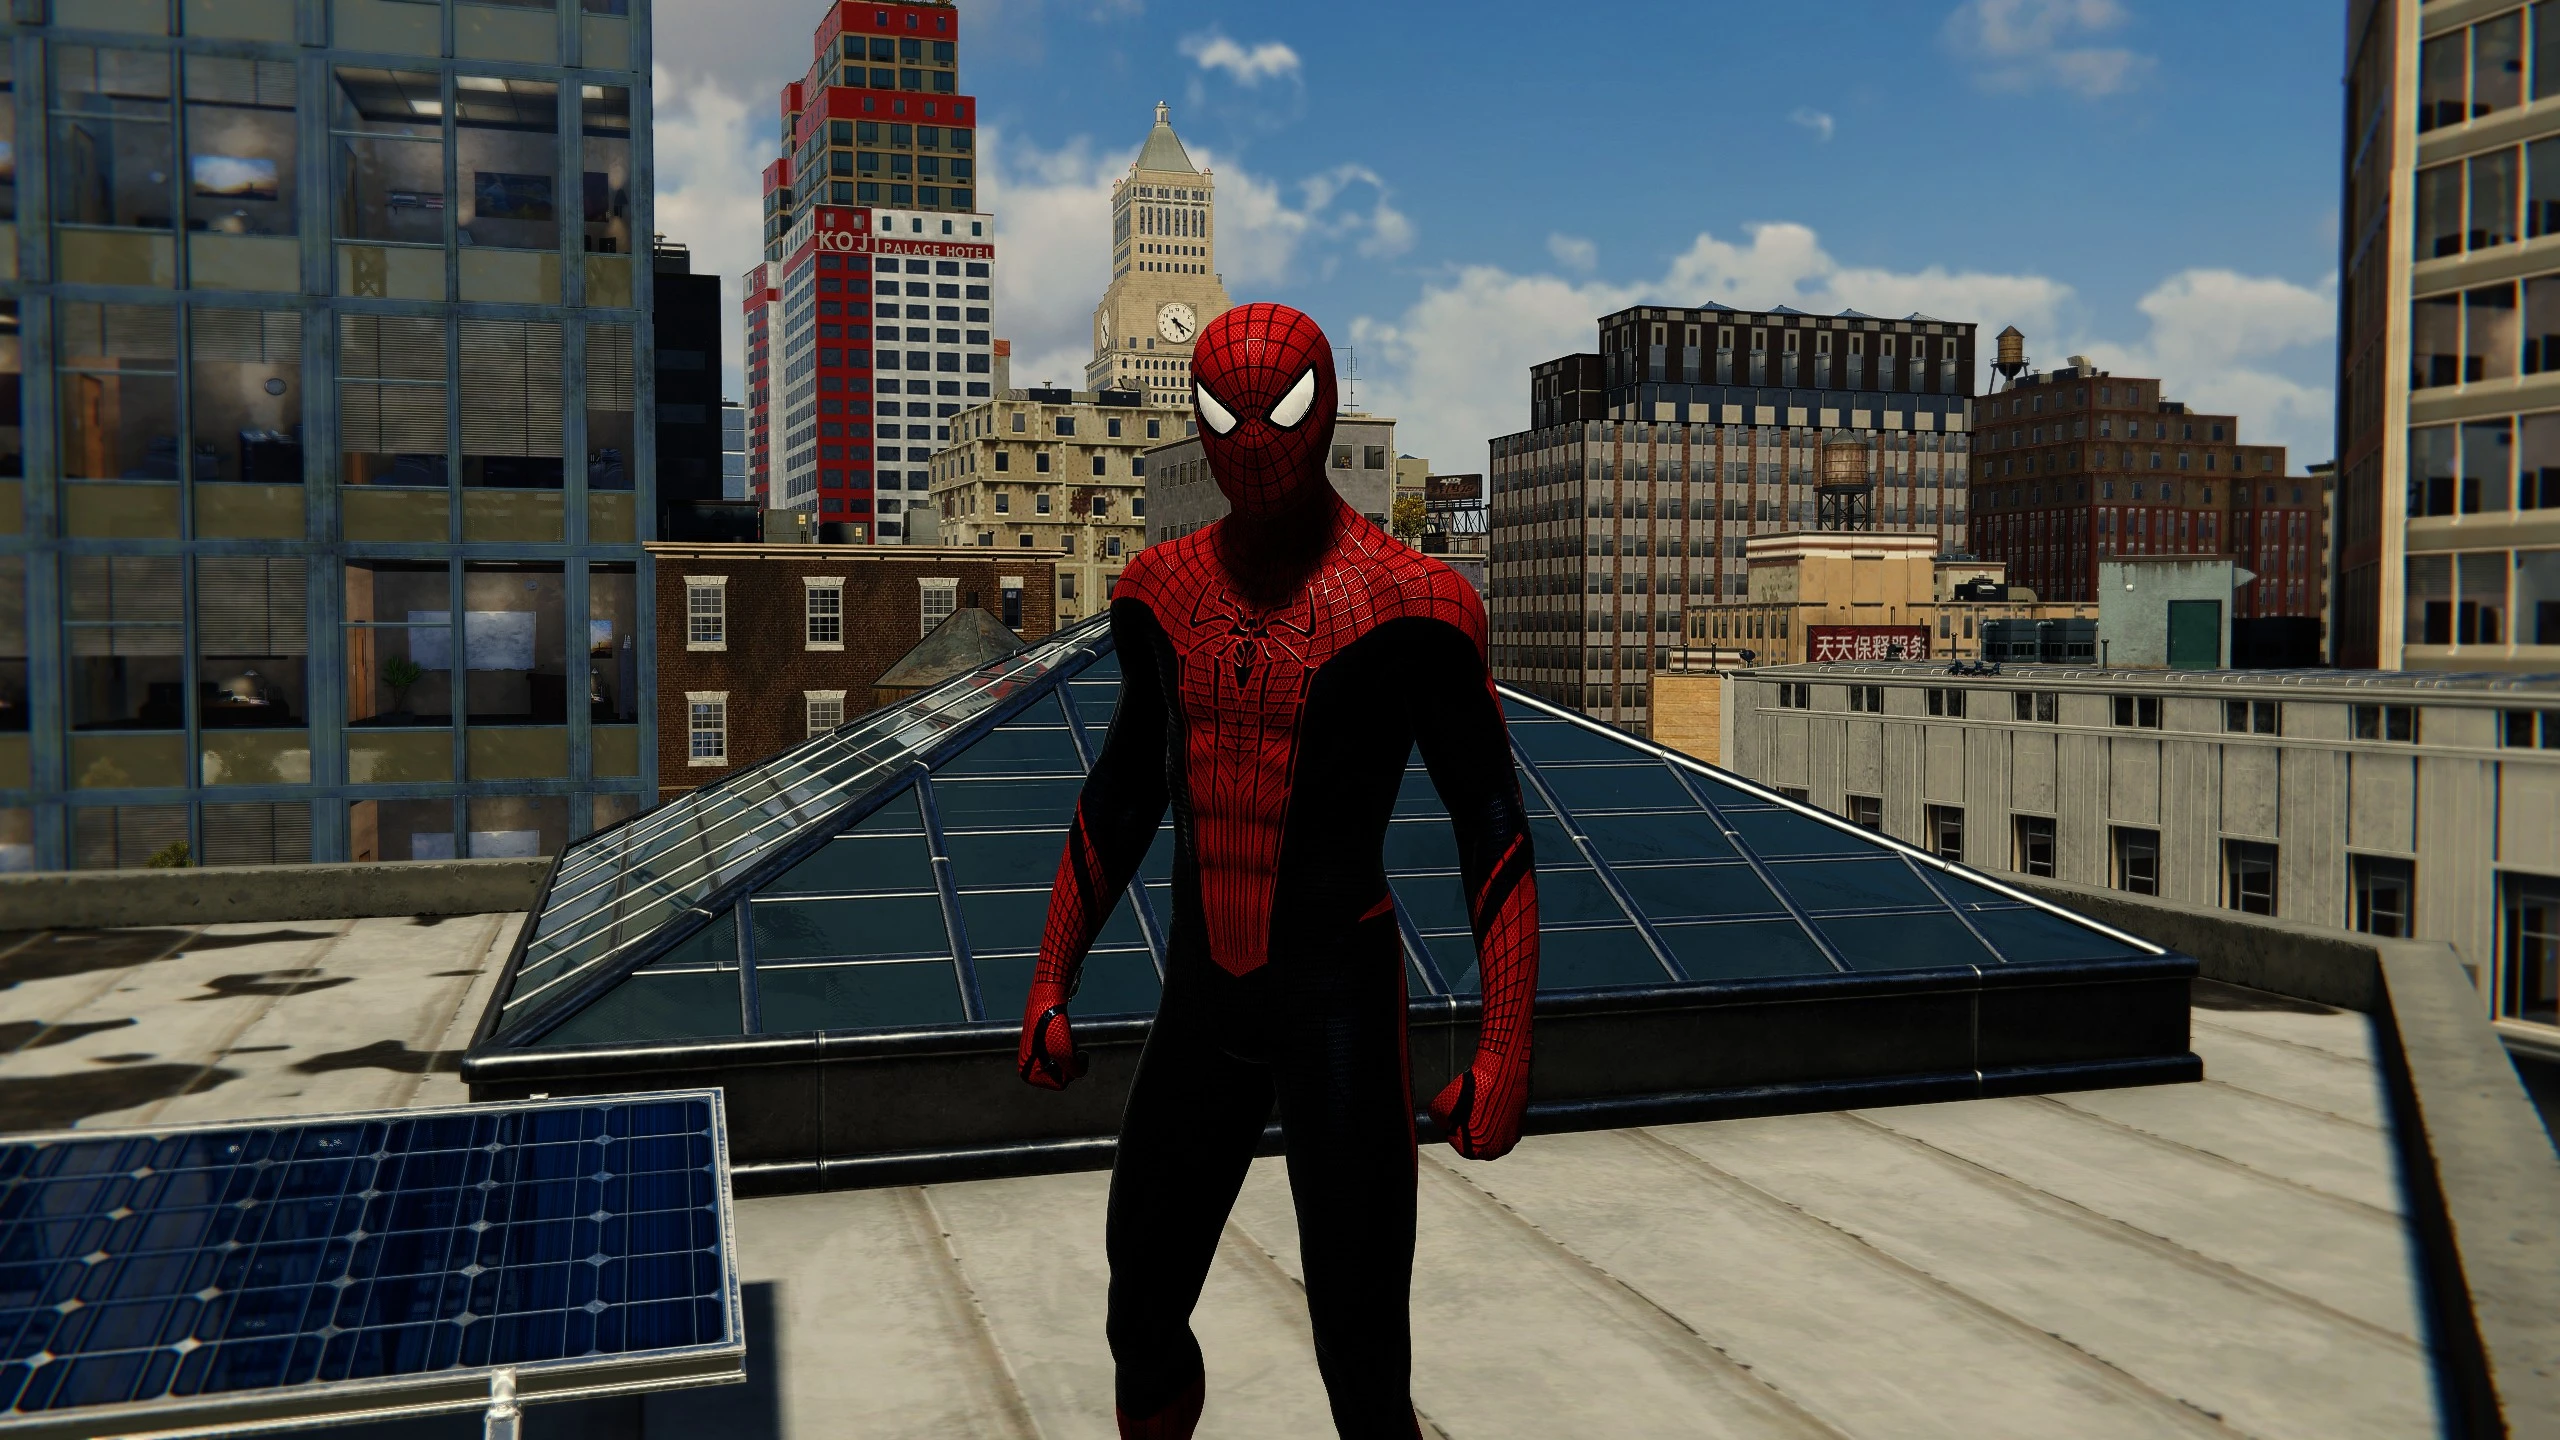 Спайдер мен пк. Spider man Remastered. Спайдер Мэн ремастер. Tasm 2 Suit Marvel Spider man. Marvel Spider man Remastered tasm 2.